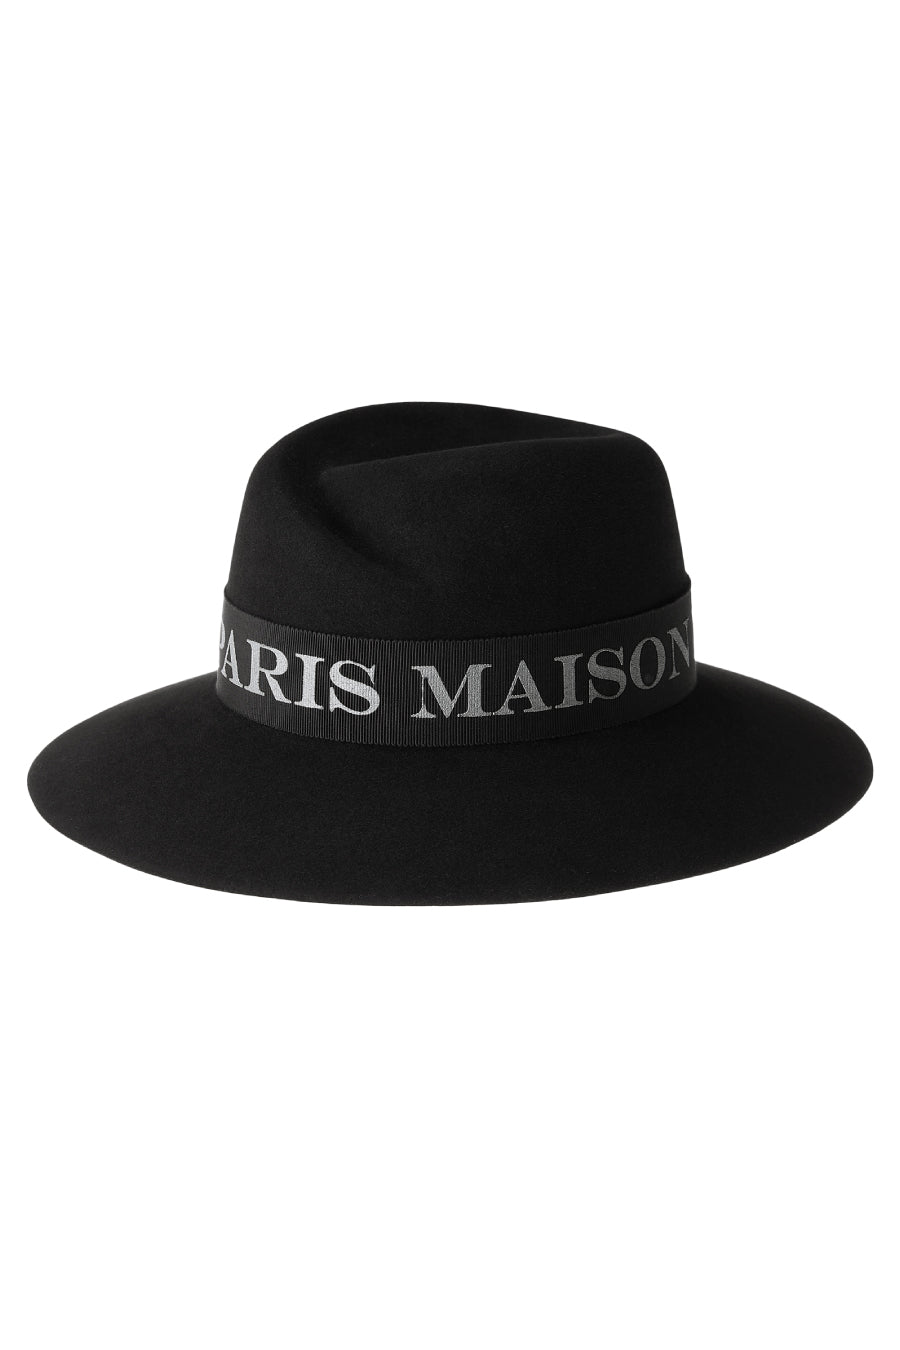 Maison Michel Virginie Platinum Logo Felt Hat - Black